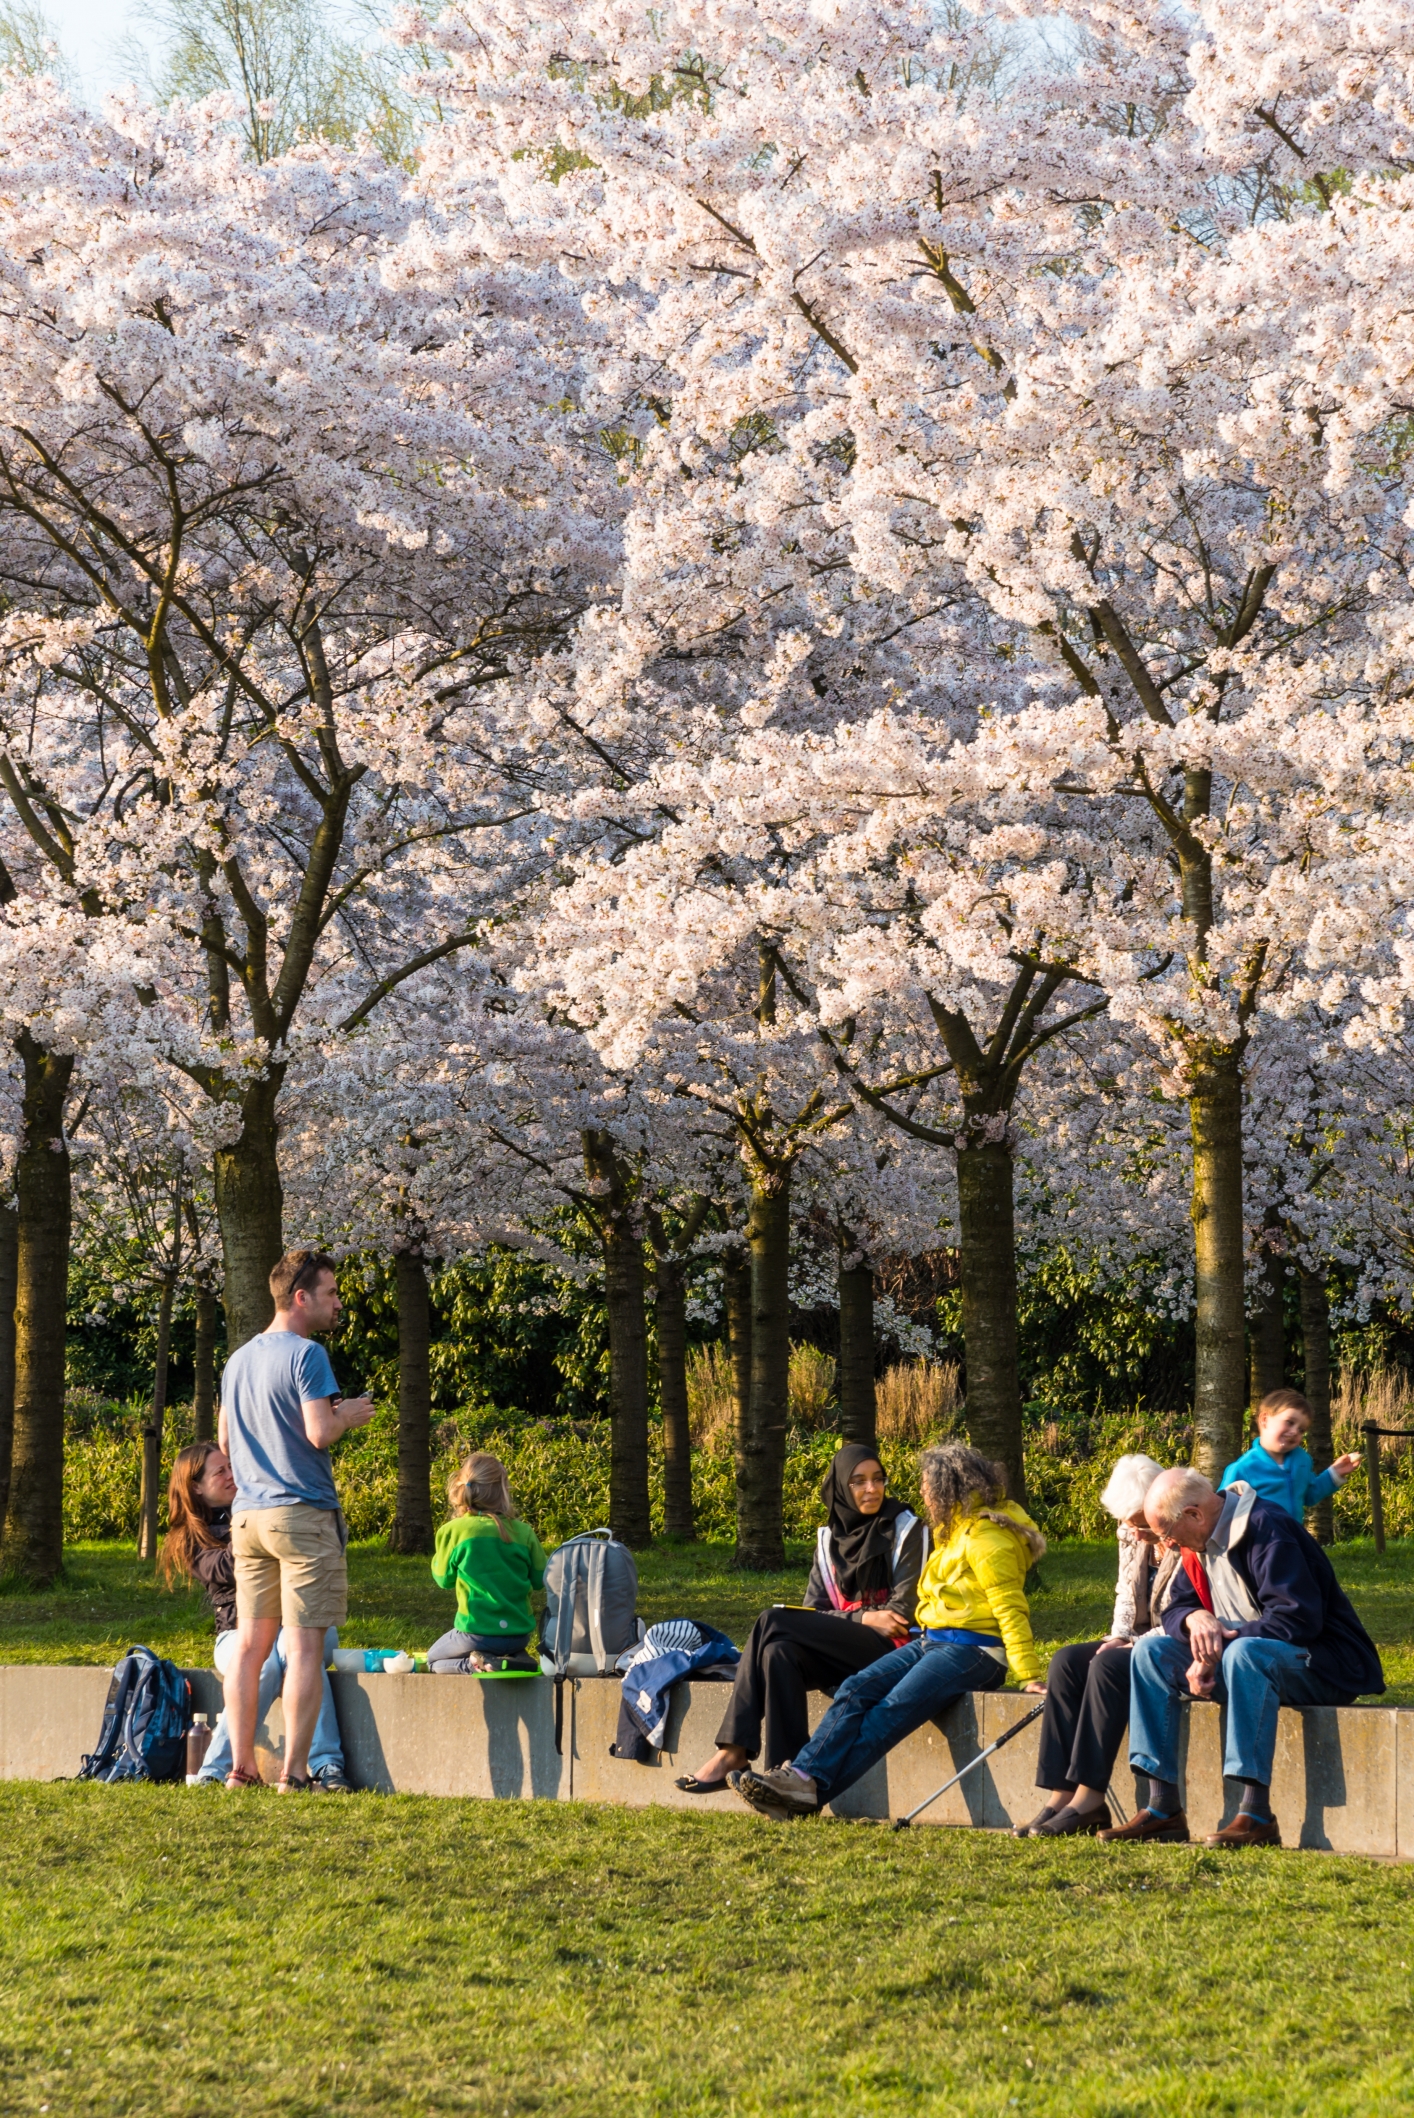 Een groepje jongeren, volwassenen en kinderen zitten bij elkaar in een park op een bank onder een boom die volop in bloesem staat